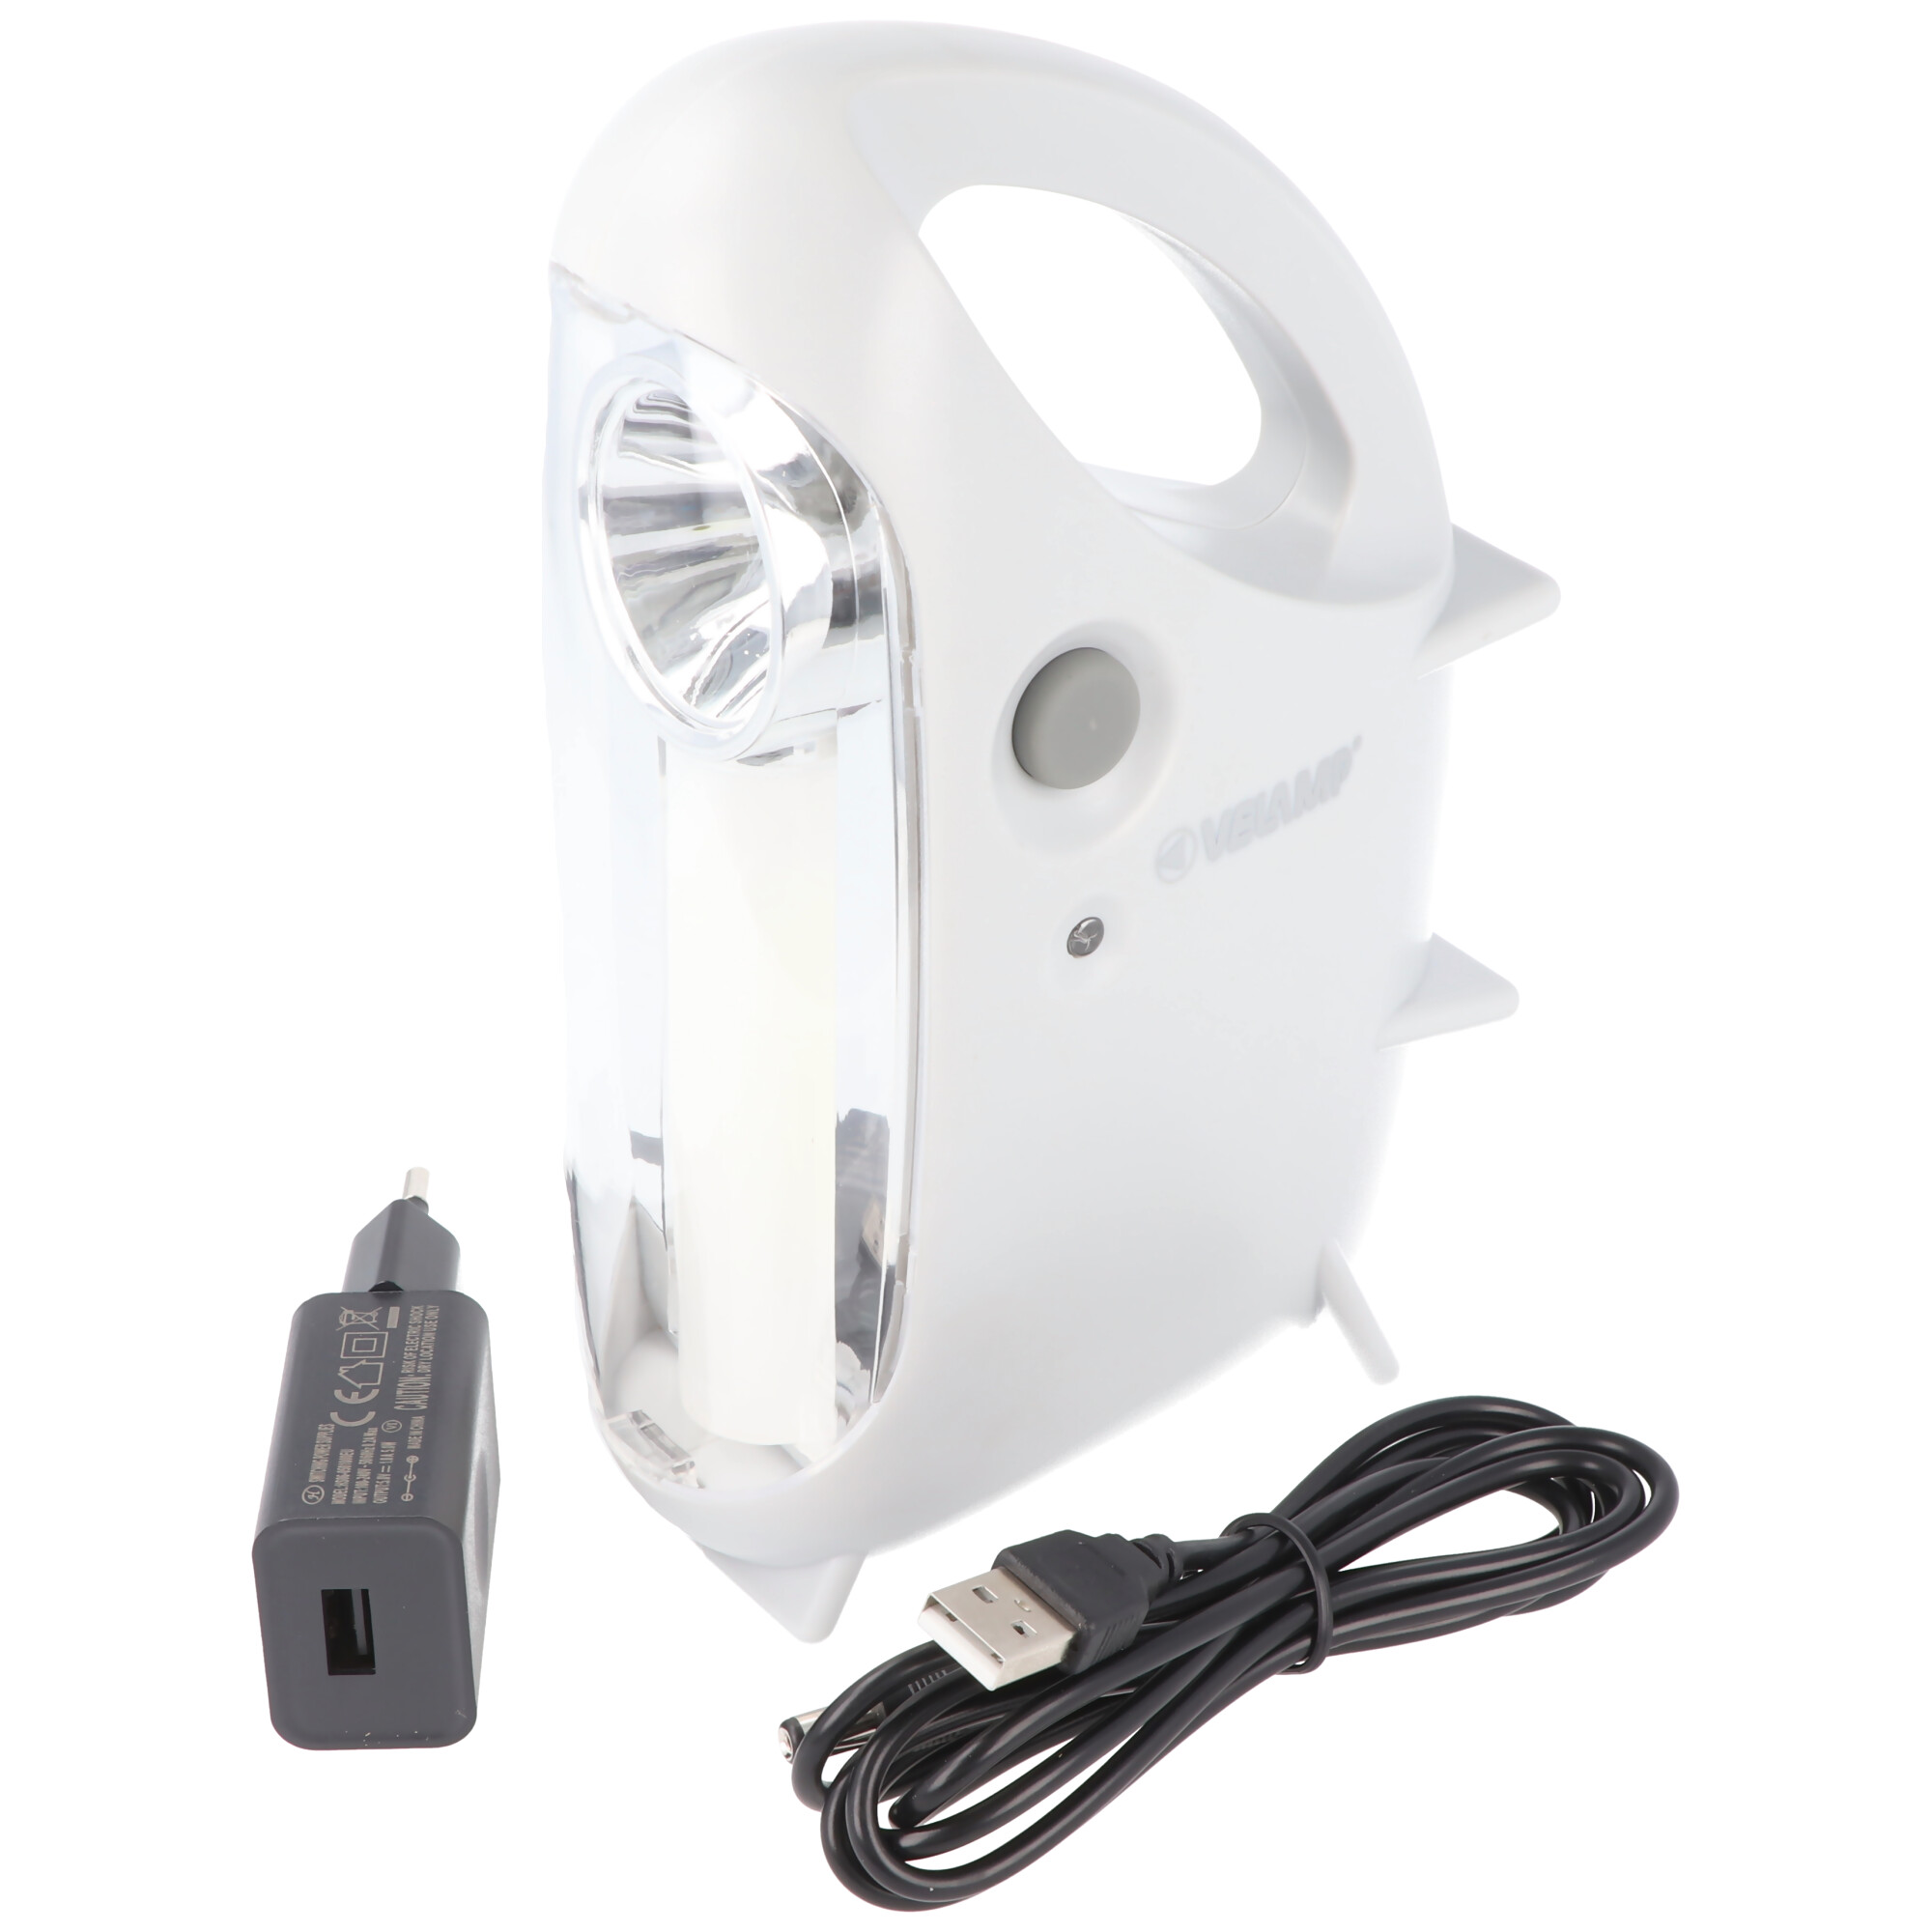 IR170EVO LED-Lampe Anti Black Out, tragbare wiederaufladbare Notleuchte mit externem Ladegerät, 170 Lumen, mit Stromausfallfunktion